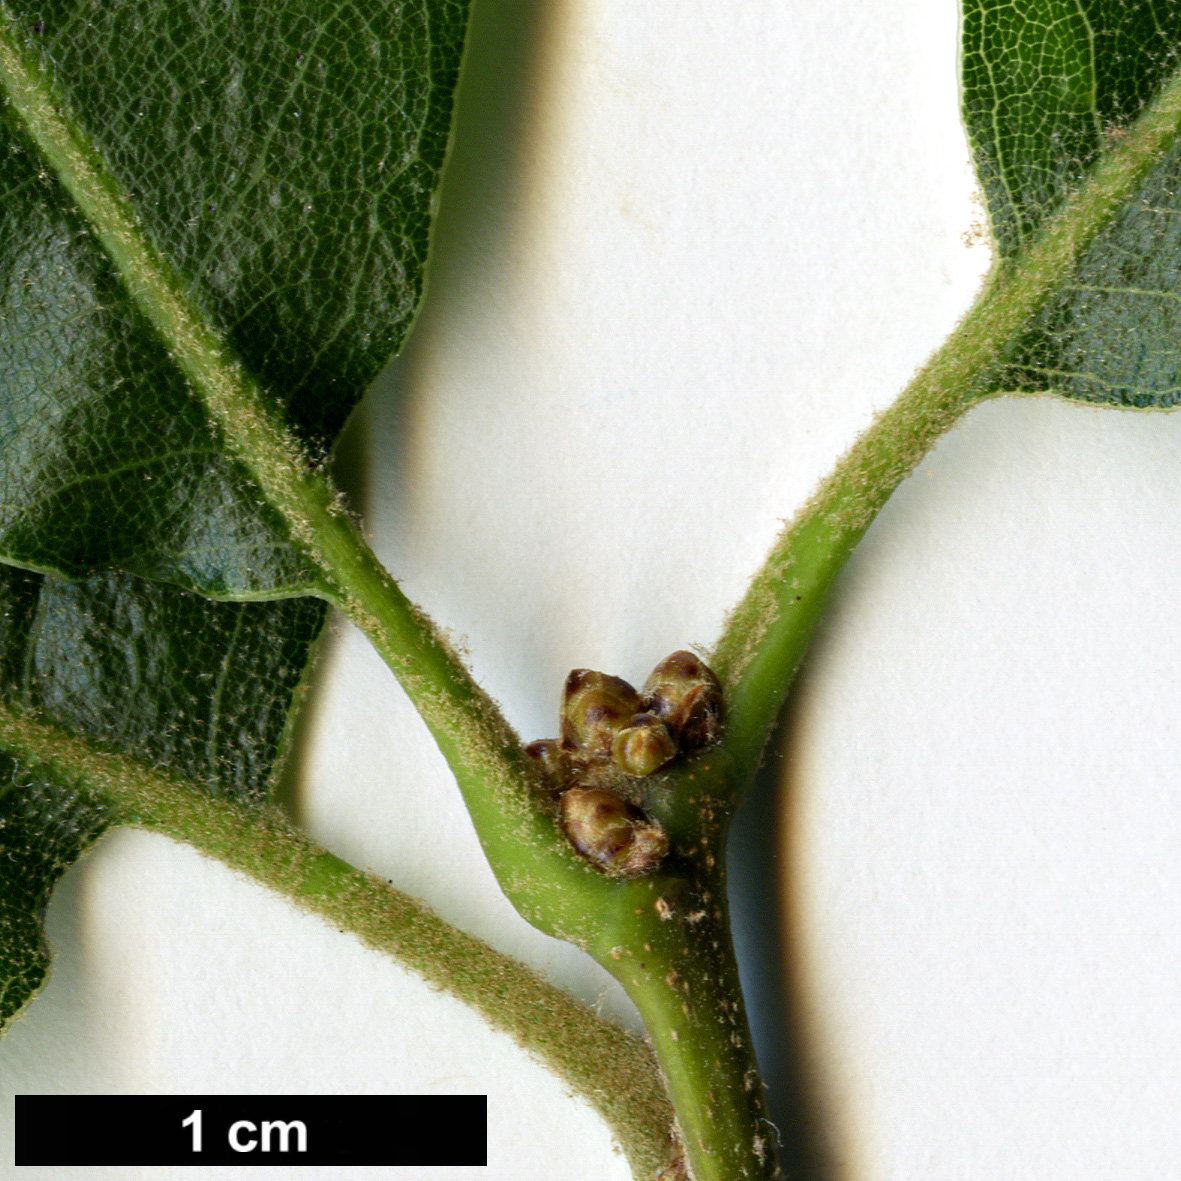 High resolution image: Family: Fagaceae - Genus: Quercus - Taxon: furfuracea